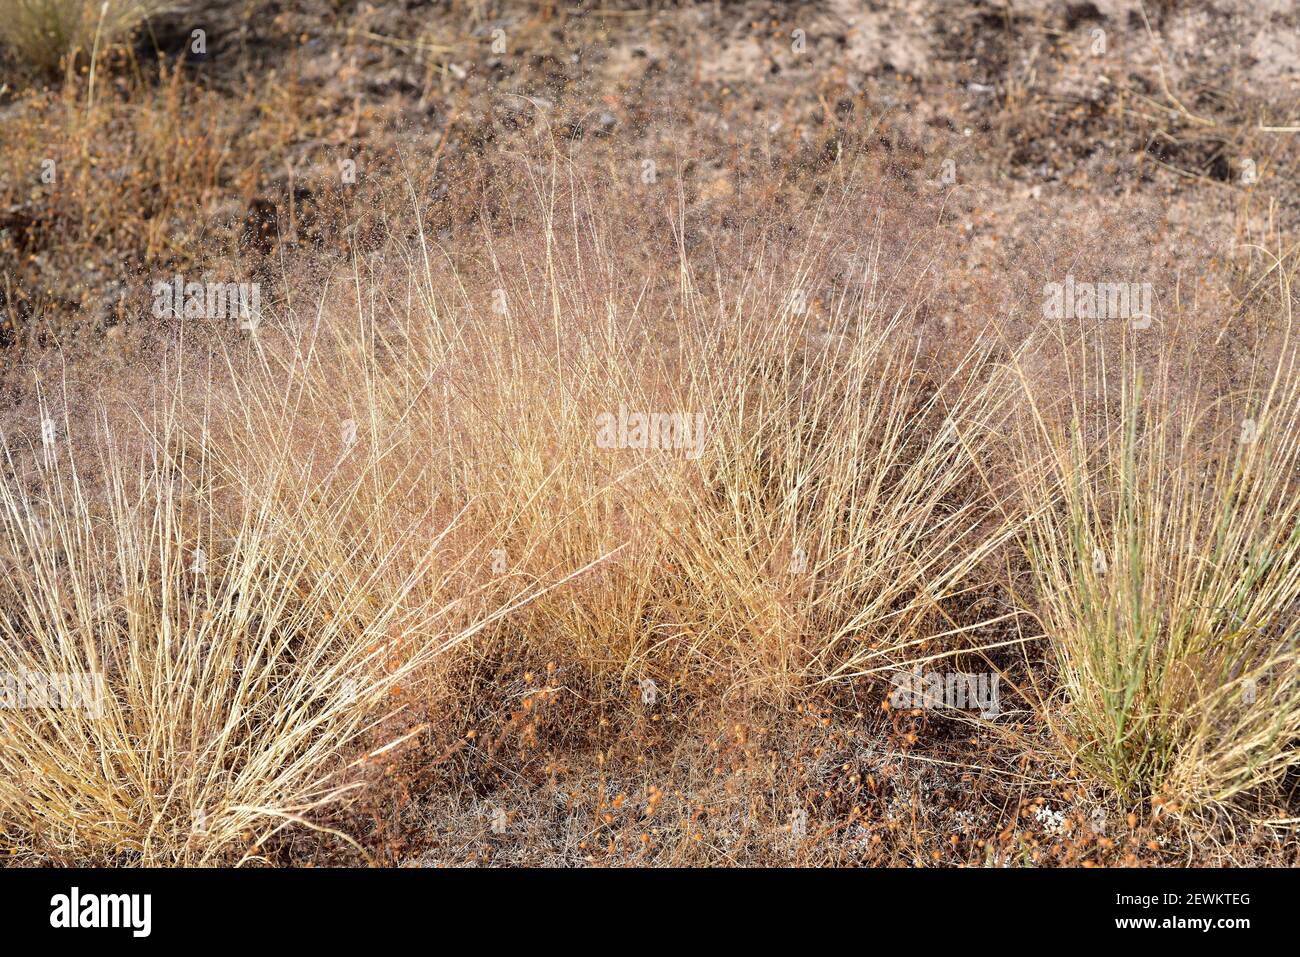 Welliges Haargras (Deschampsia flexuosa) ist eine mehrjährige Pflanze, die in Eurasien, Afrika und Amerika beheimatet ist. Dieses Foto wurde in Arribes del Duero Natural aufgenommen Stockfoto